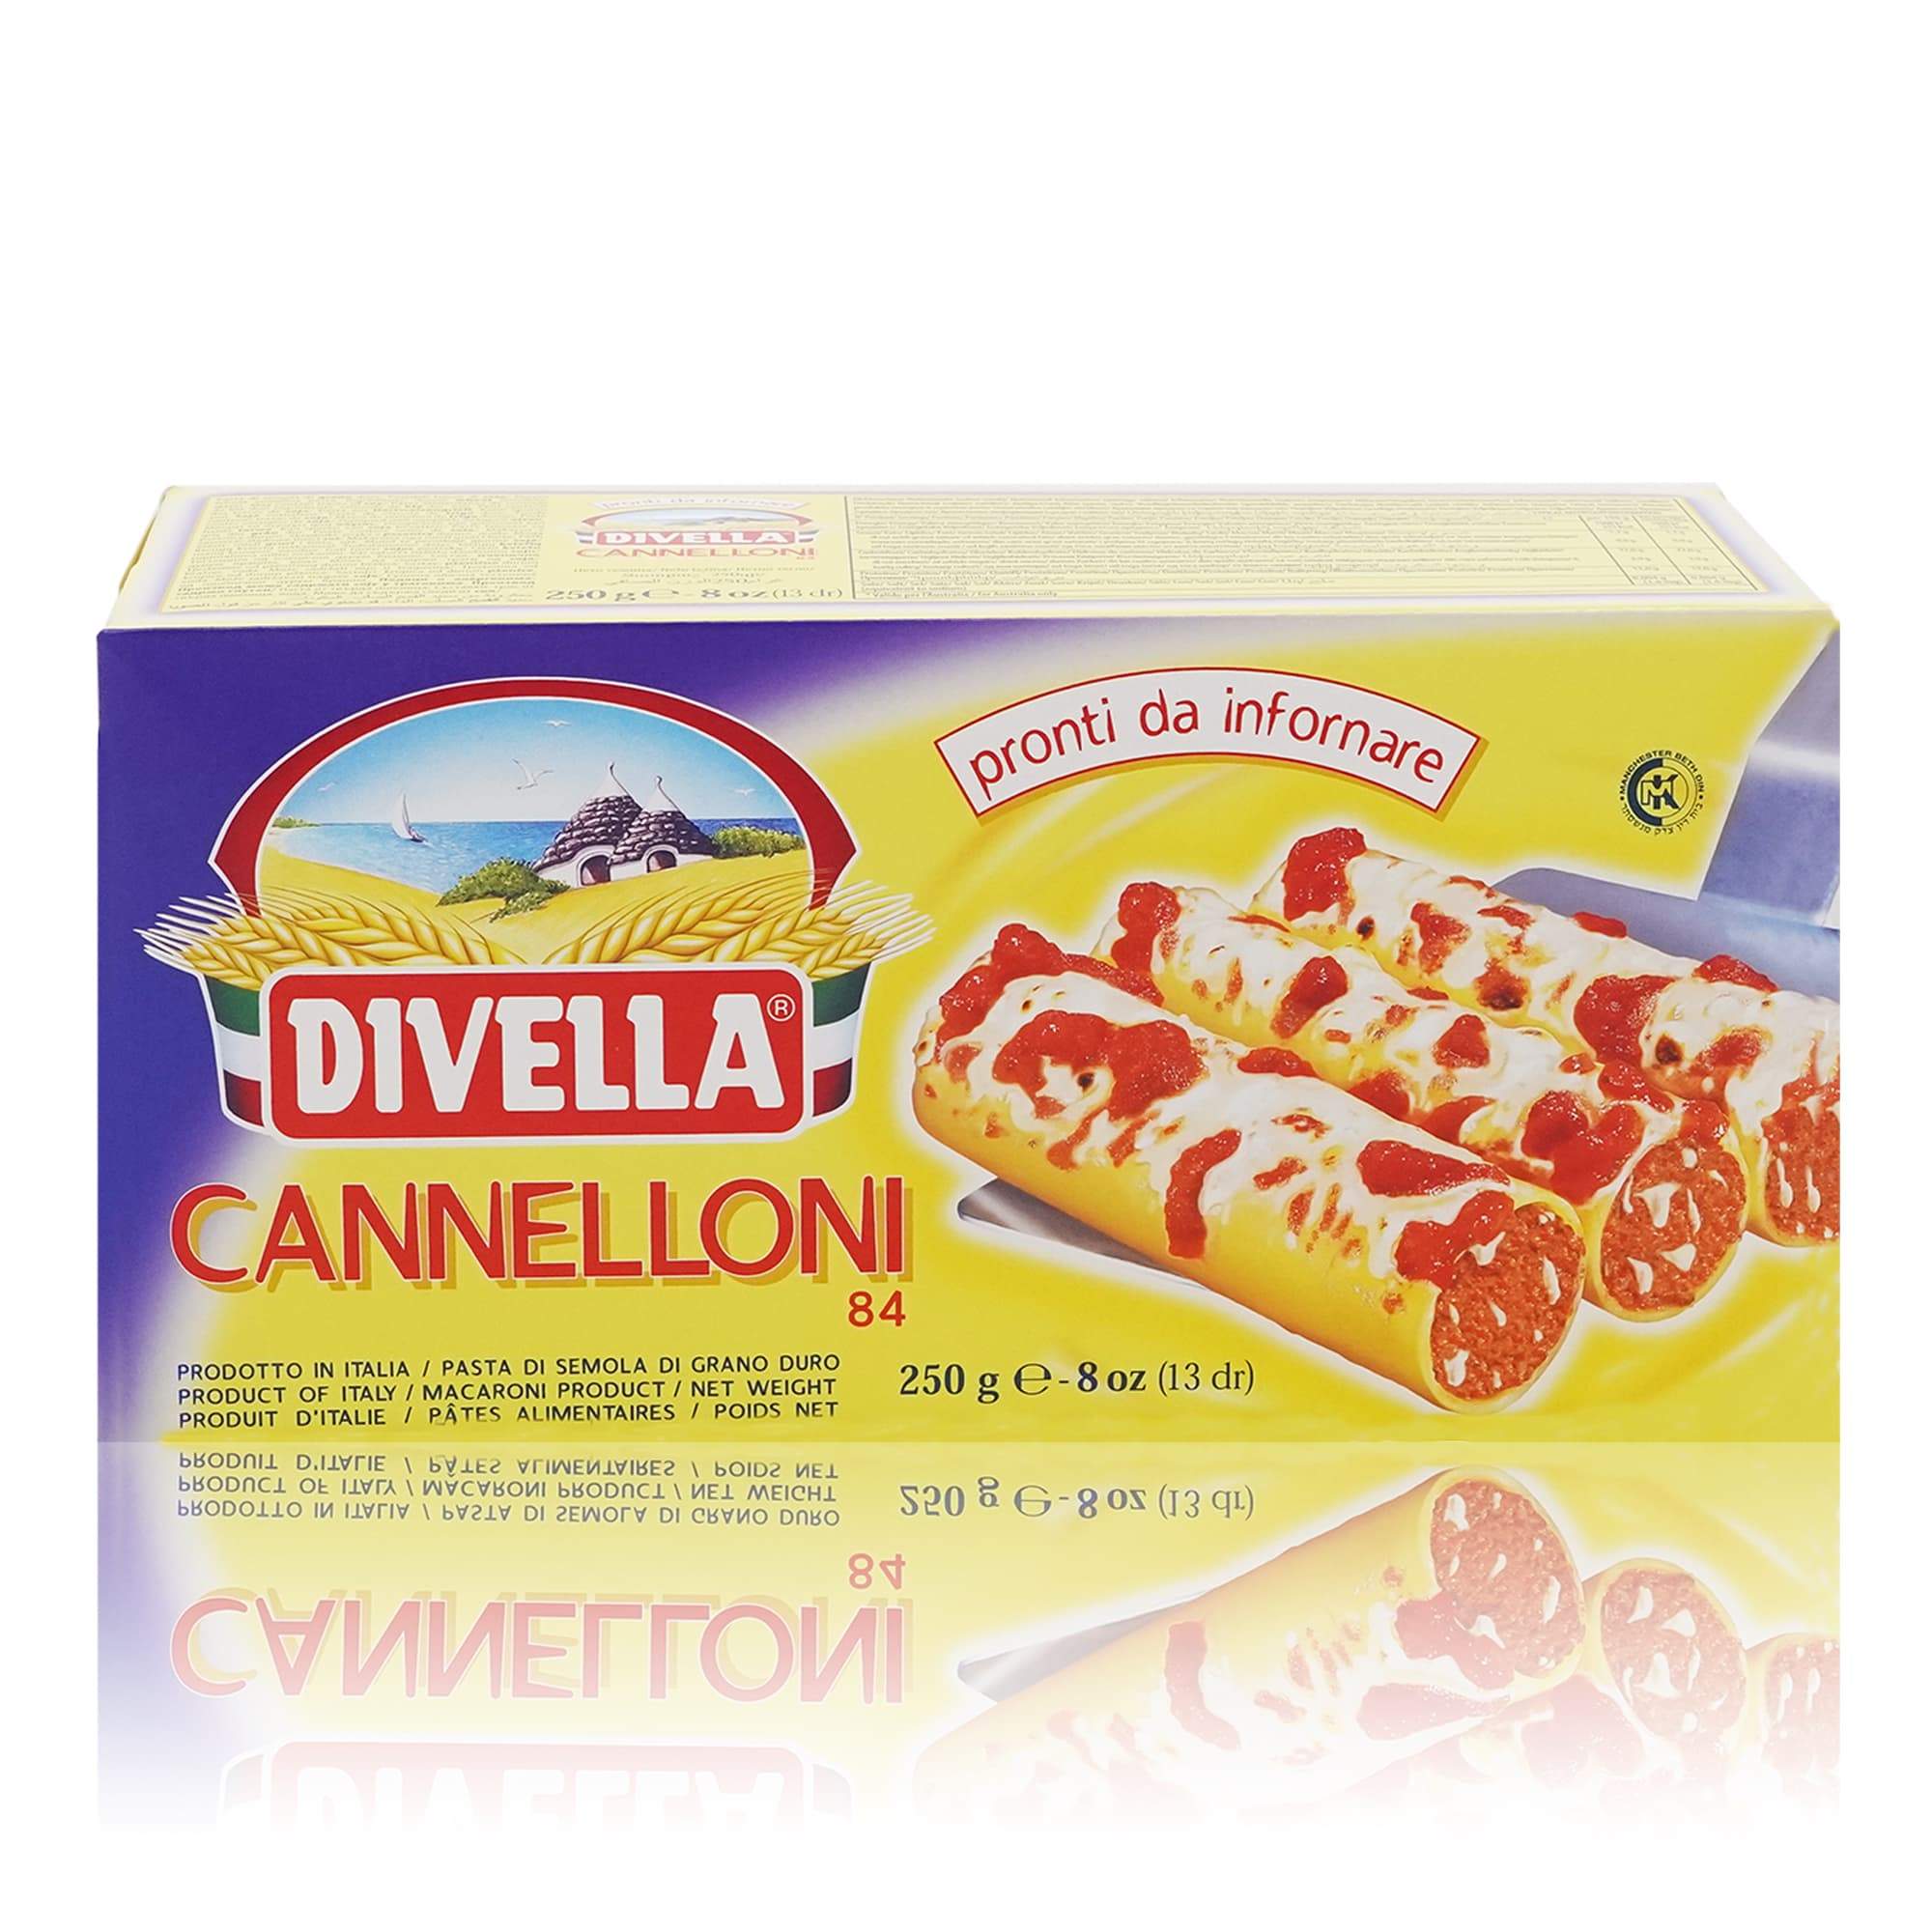 DIVELLA - Cannelloni Nr. 84 – Cannellonihülsen - 0,250kg - italienisch - einkaufen.de